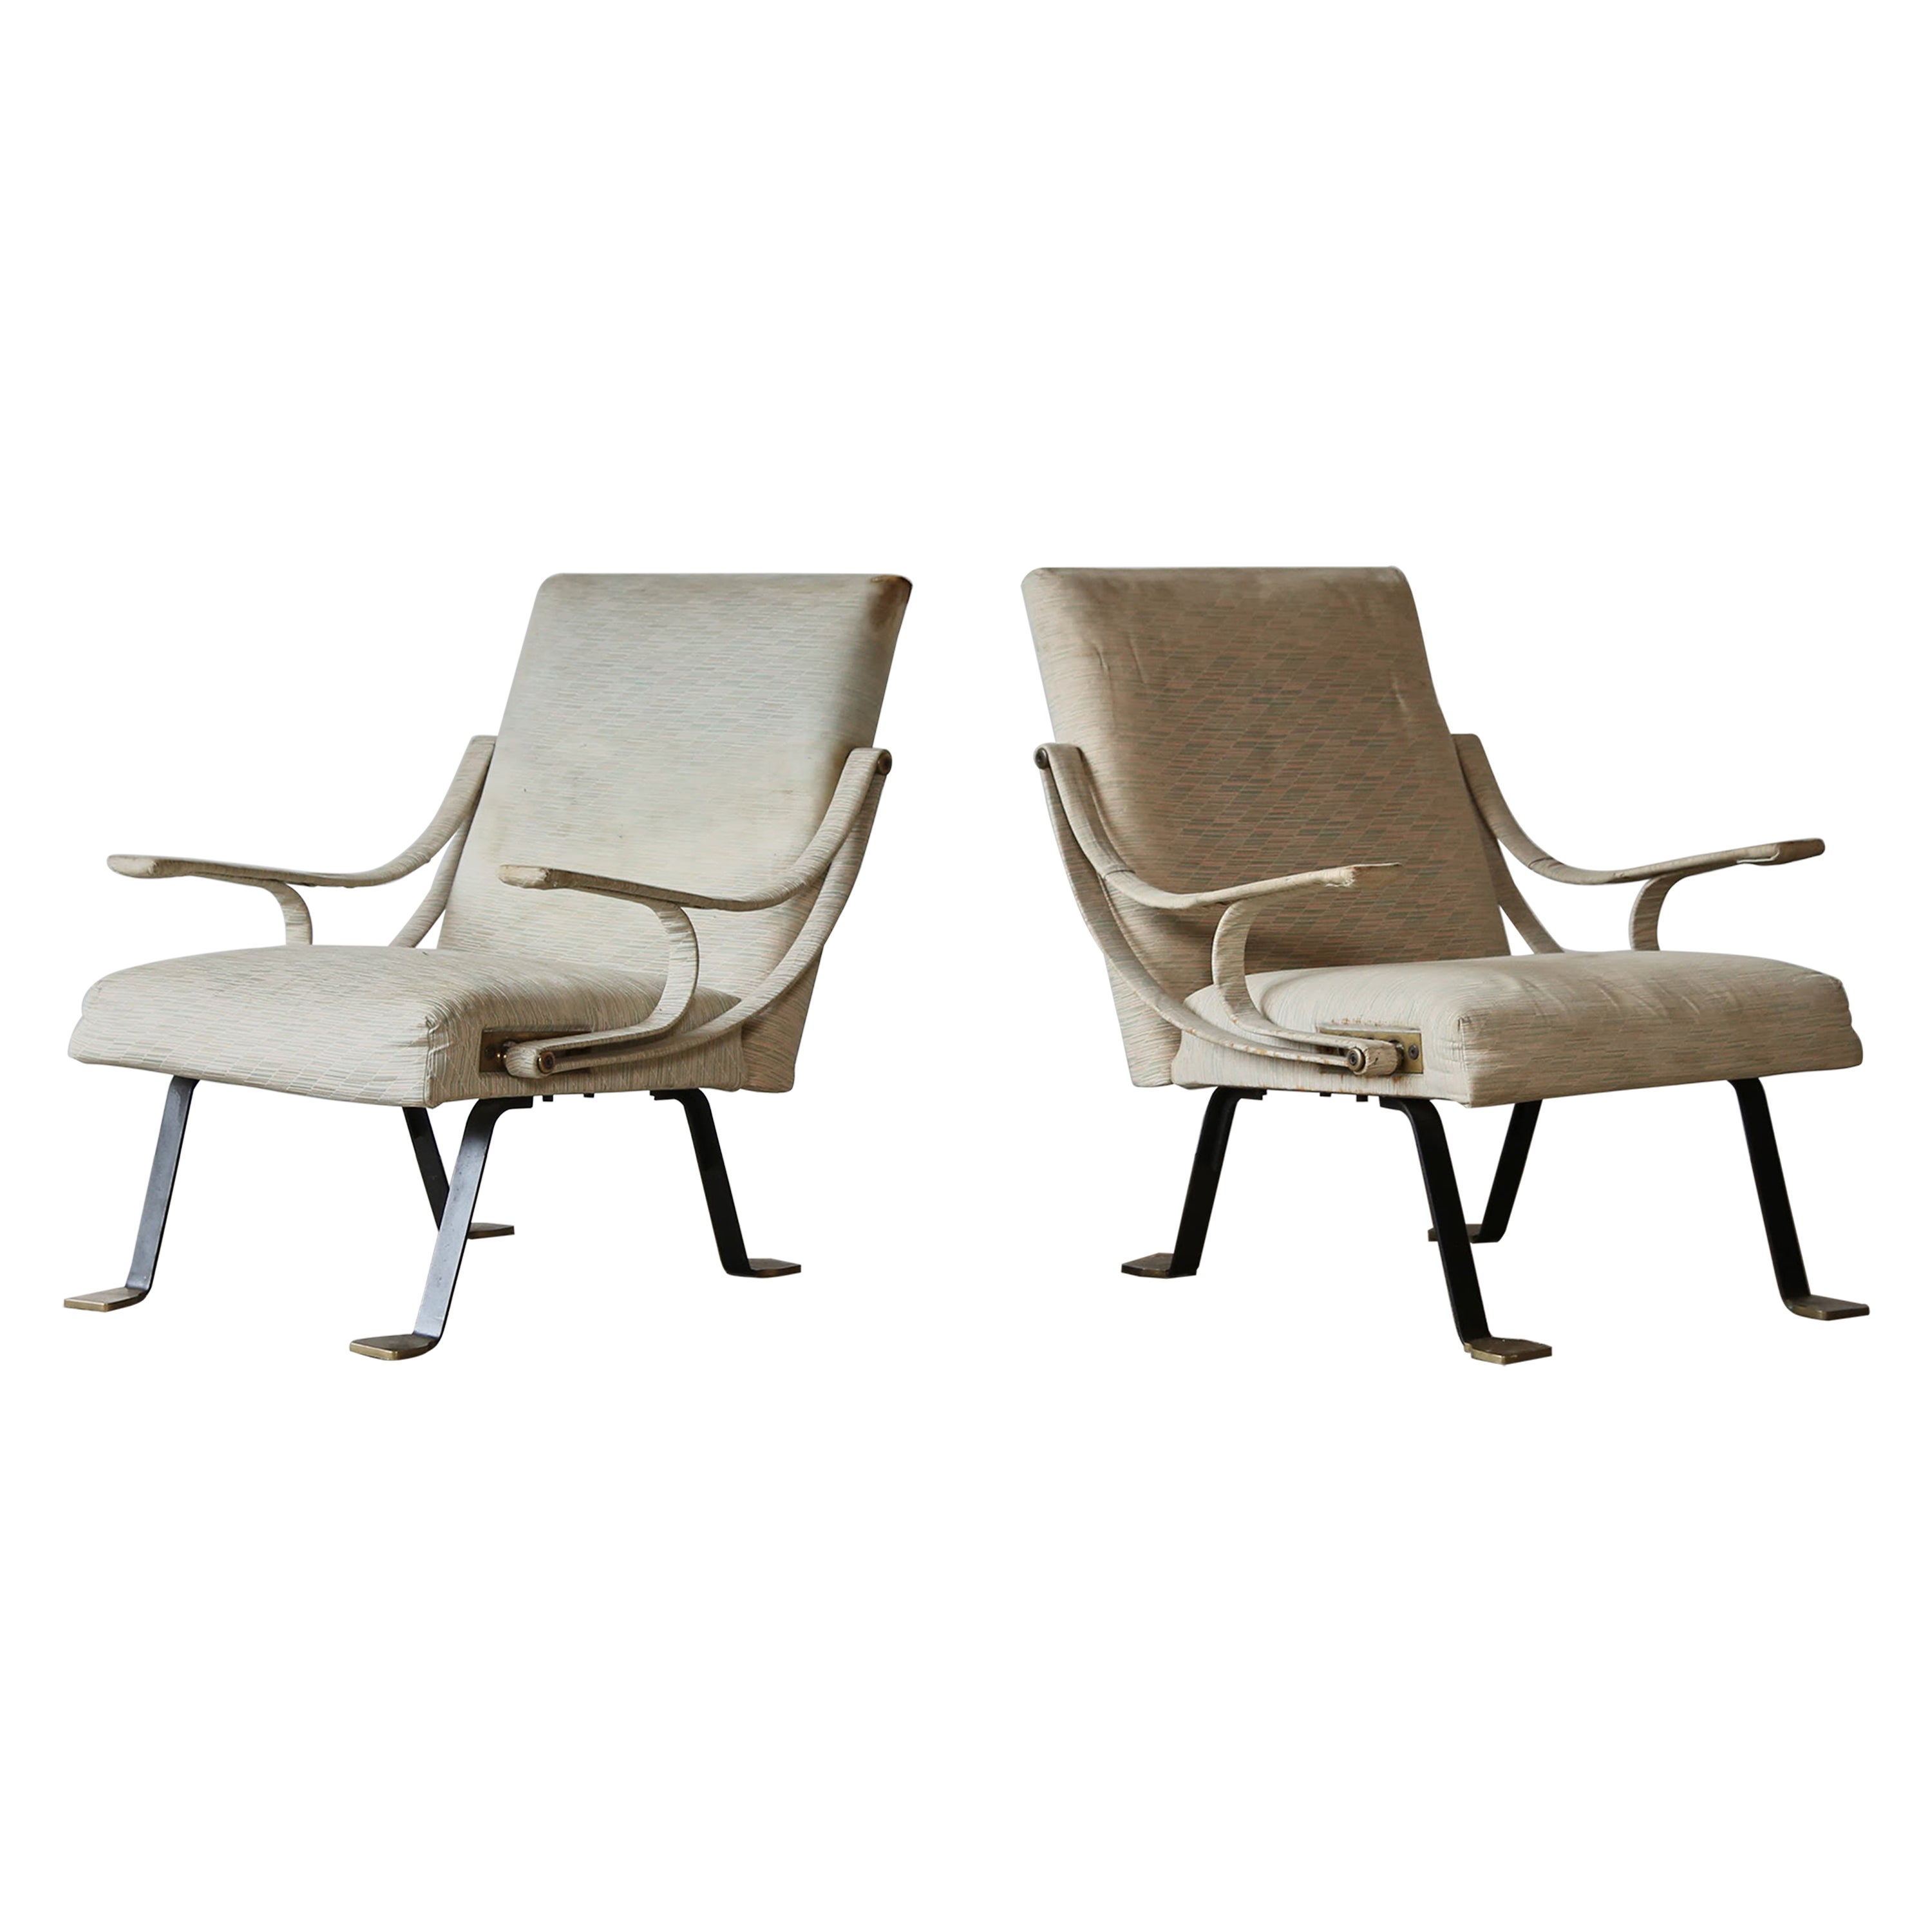 Rechteckige Digamma-Stühle von Ignazio Gardella, 1960er Jahre, Italien, zur Neupolsterung